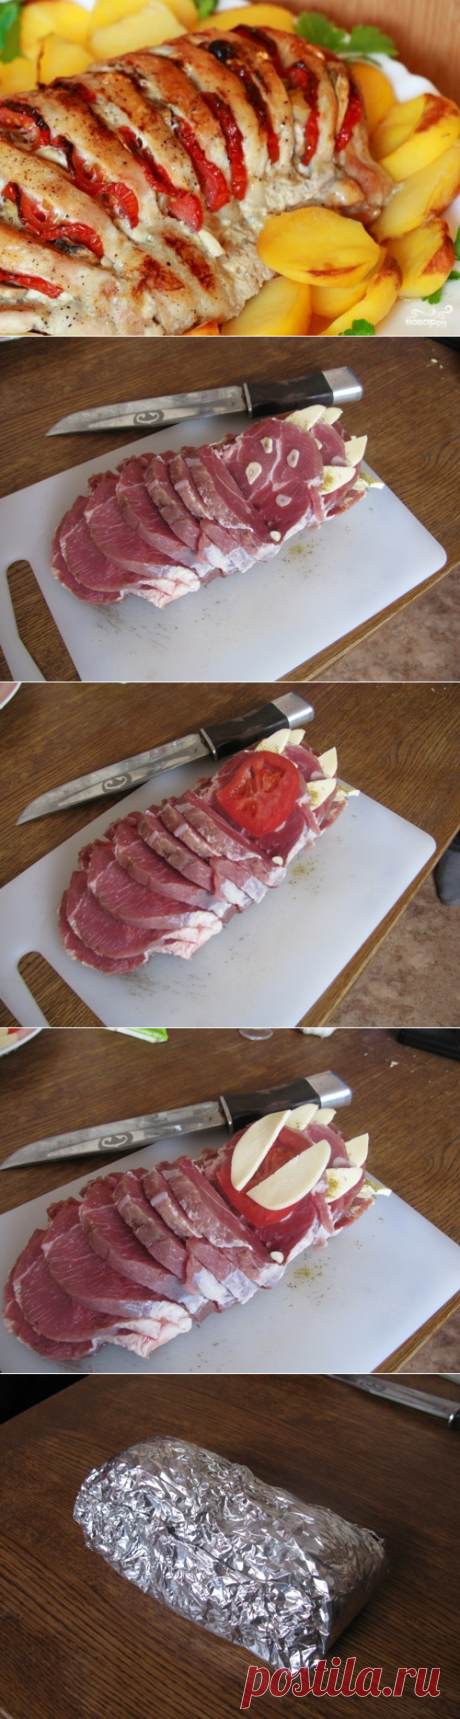 Мясо-гармошка в духовке - пошаговый рецепт с фото на Повар.ру